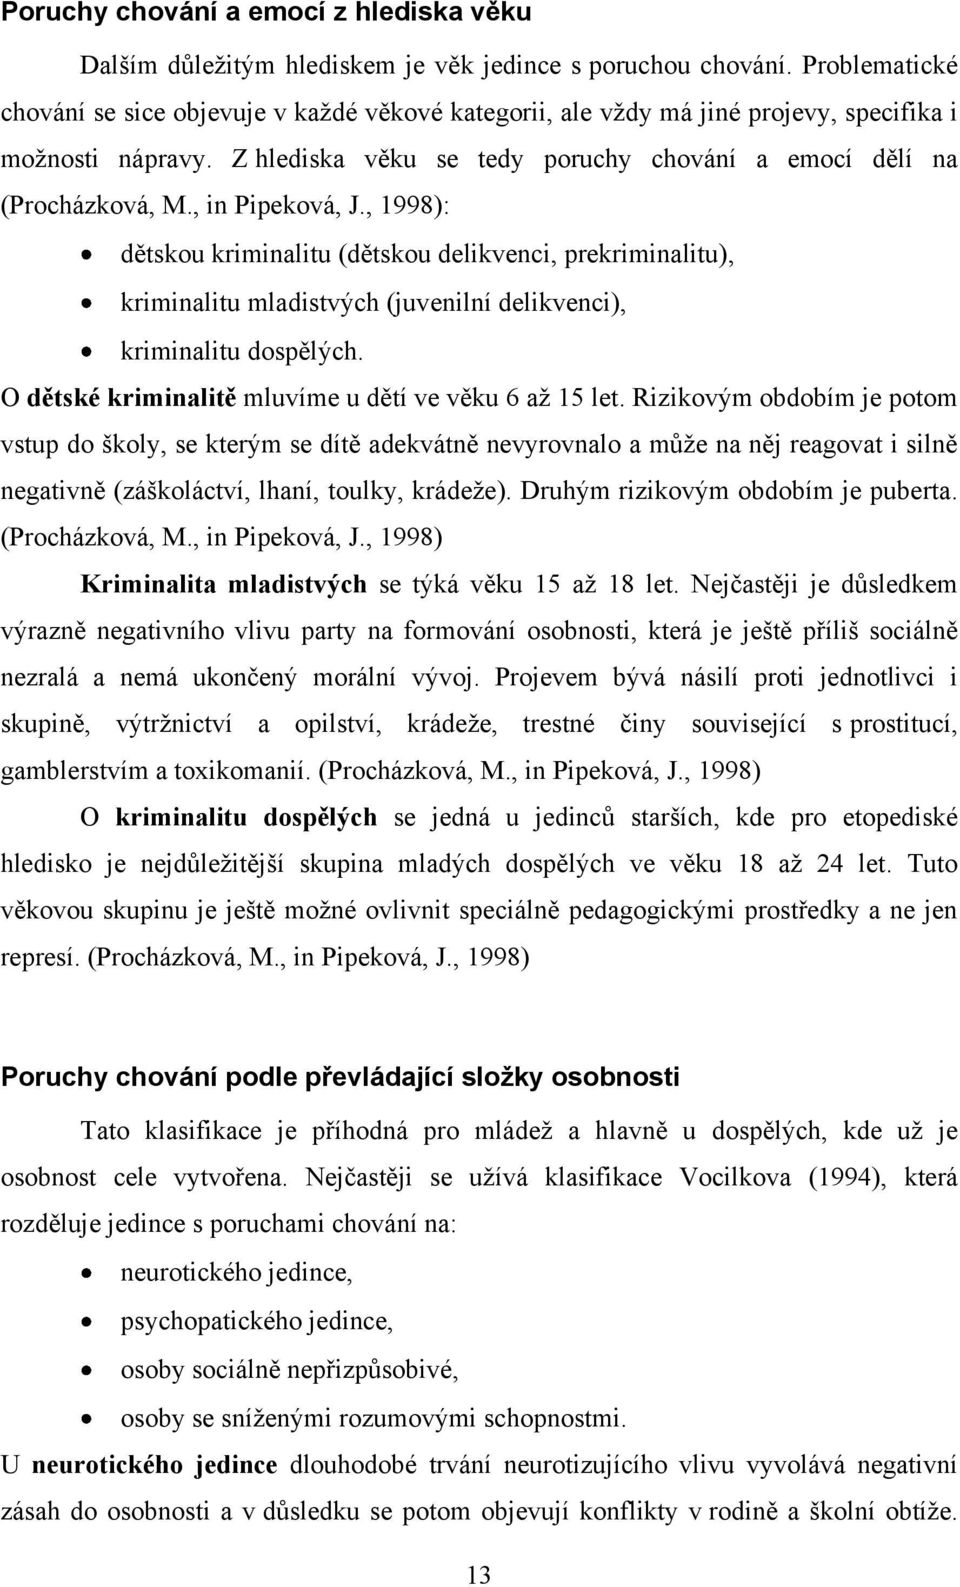 , in Pipeková, J., 1998): dětskou kriminalitu (dětskou delikvenci, prekriminalitu), kriminalitu mladistvých (juvenilní delikvenci), kriminalitu dospělých.